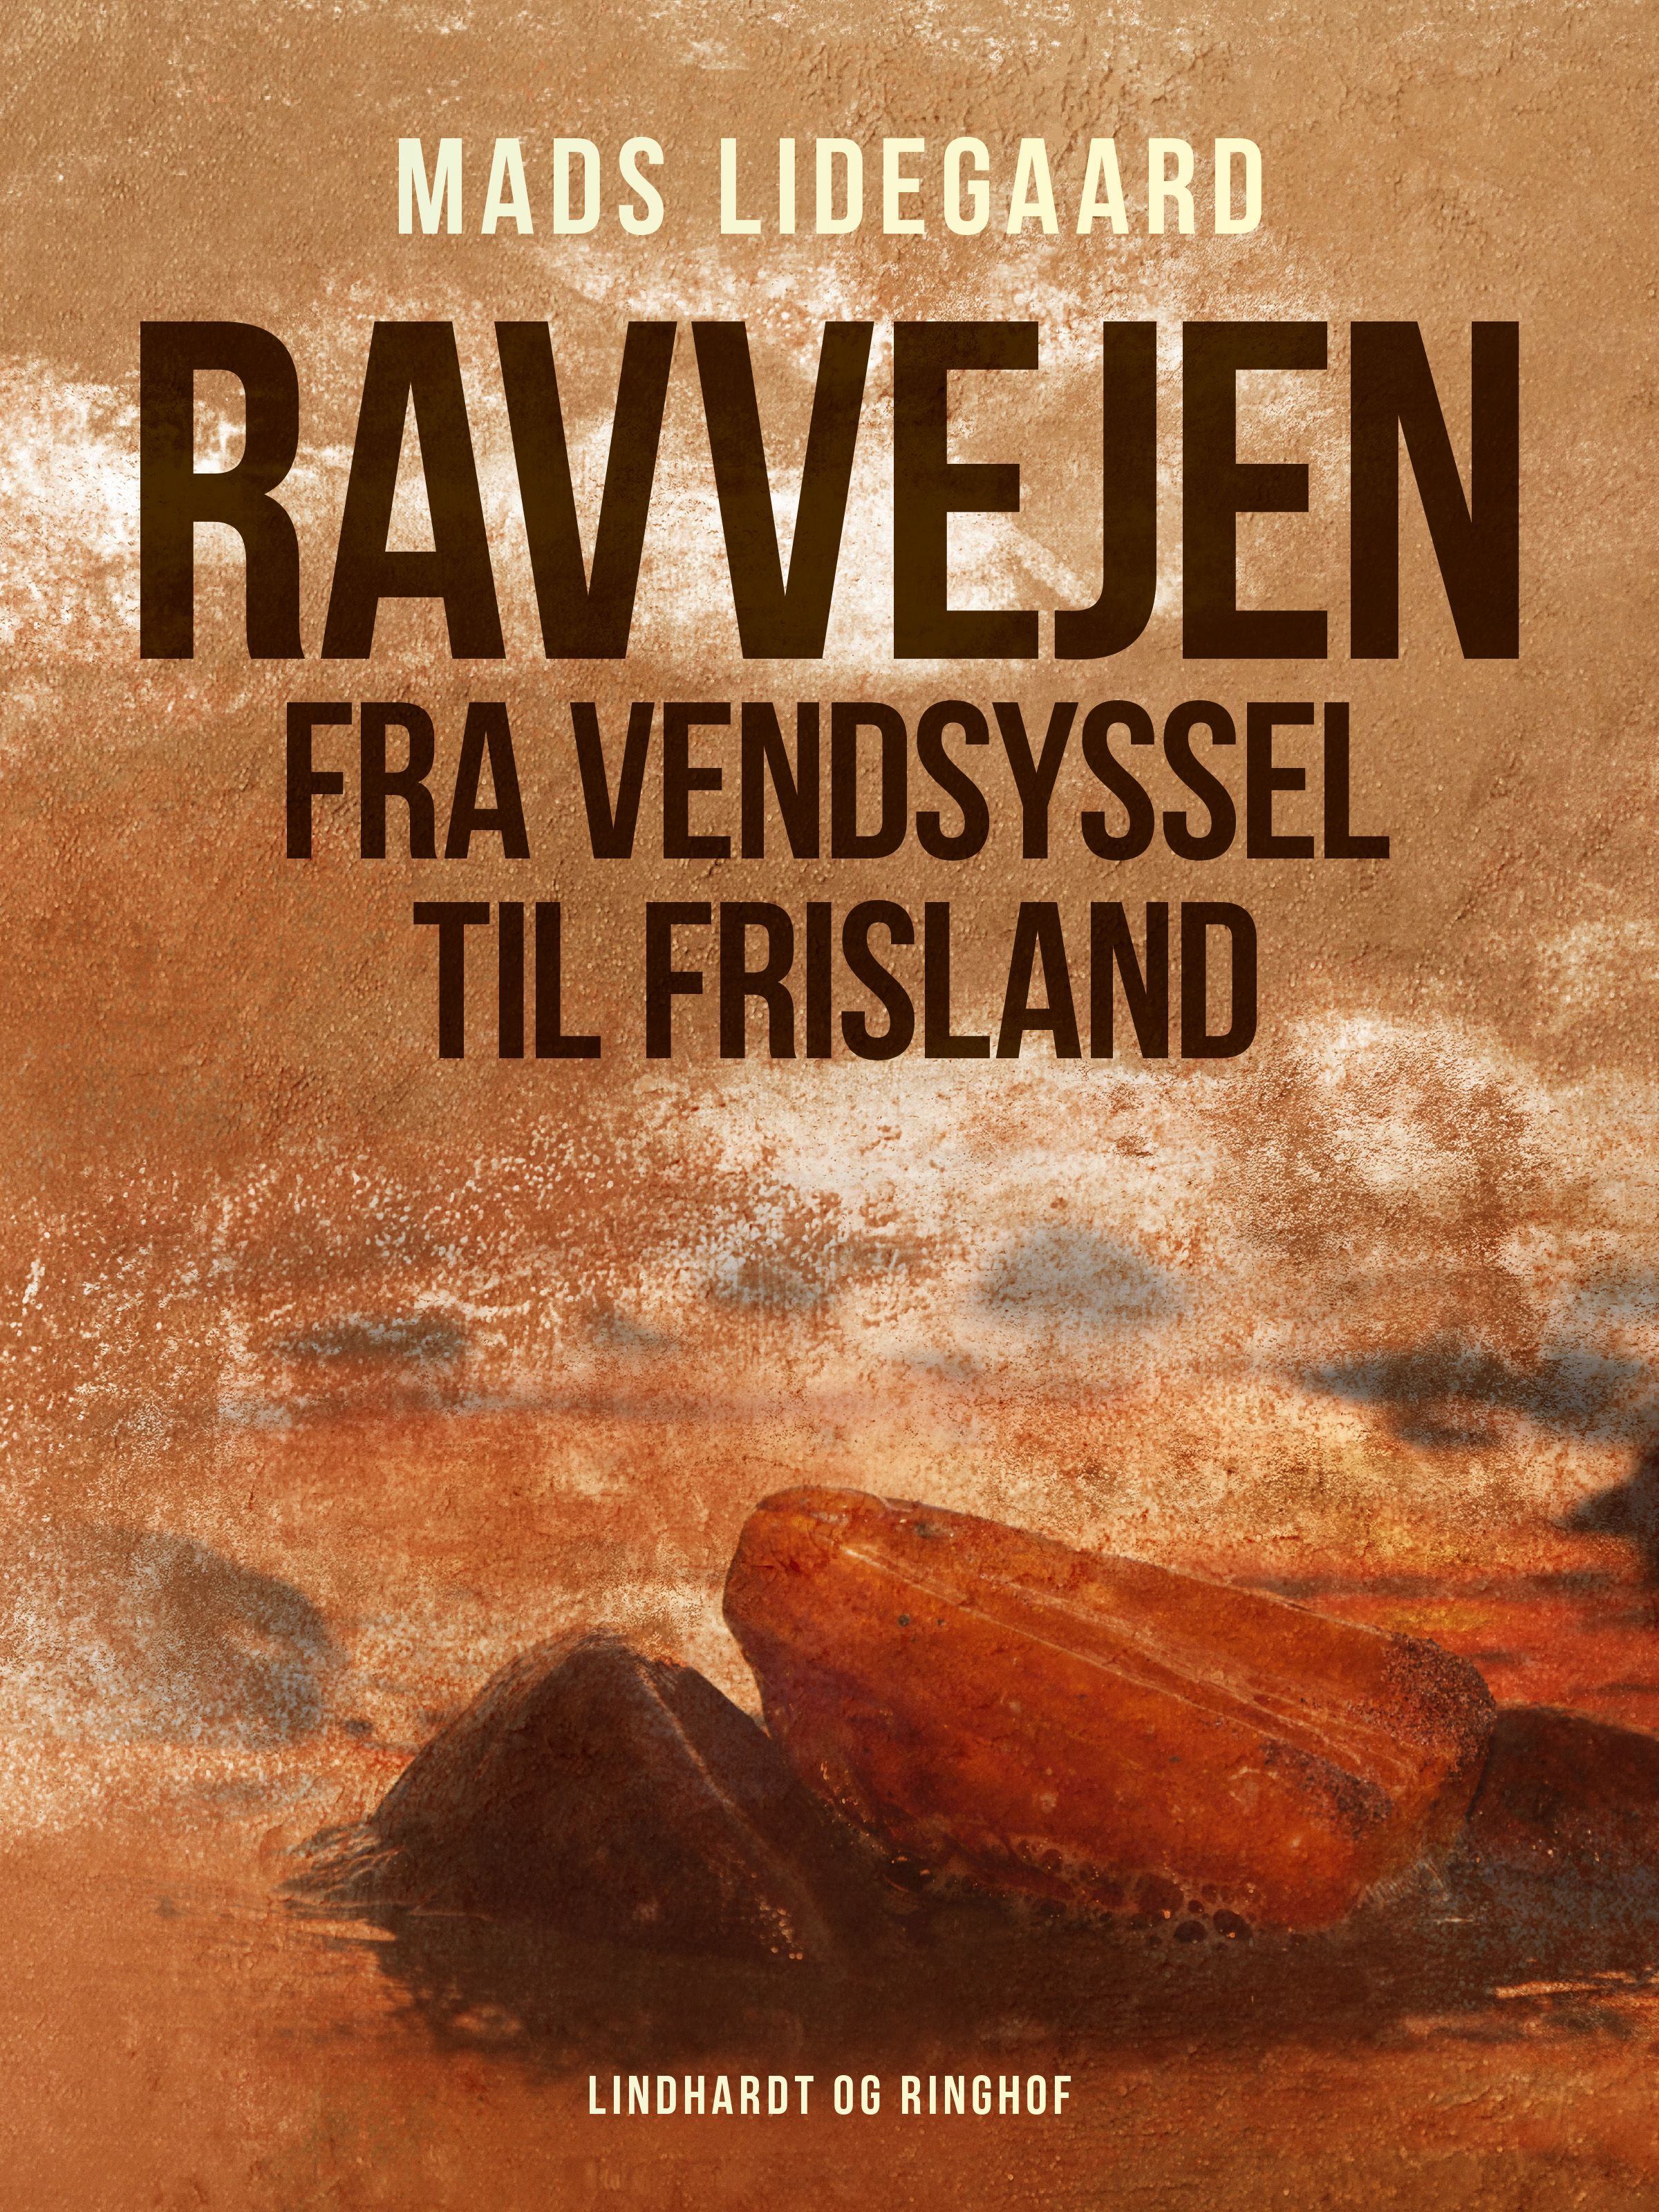 Ravvejen fra Vendsyssel til Frisland, e-bok av Mads Lidegaard